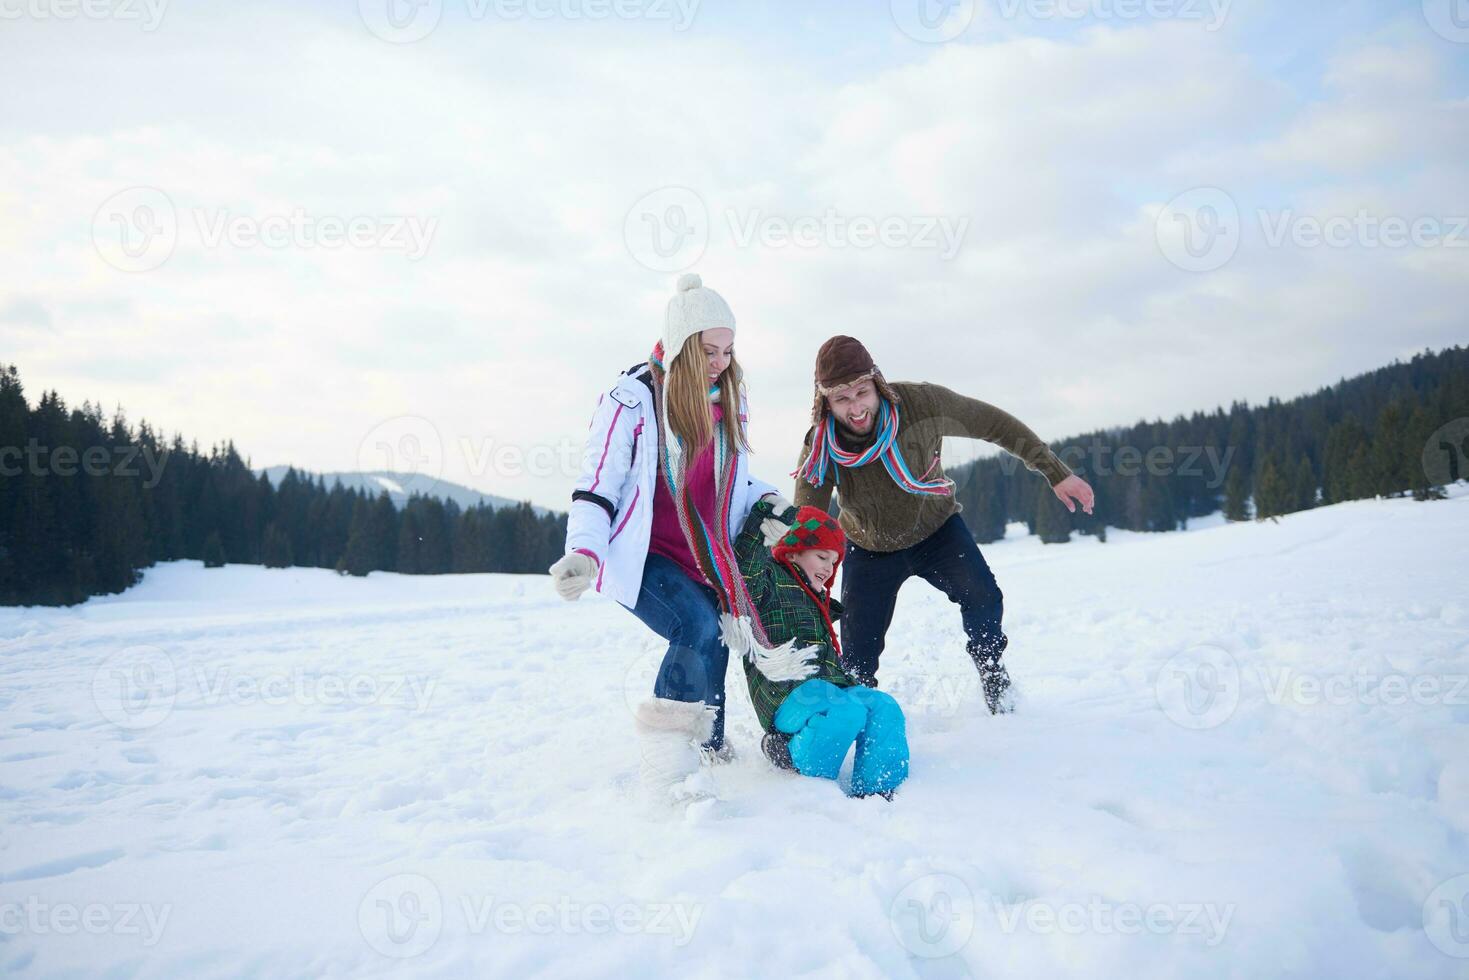 família feliz jogando juntos na neve no inverno foto